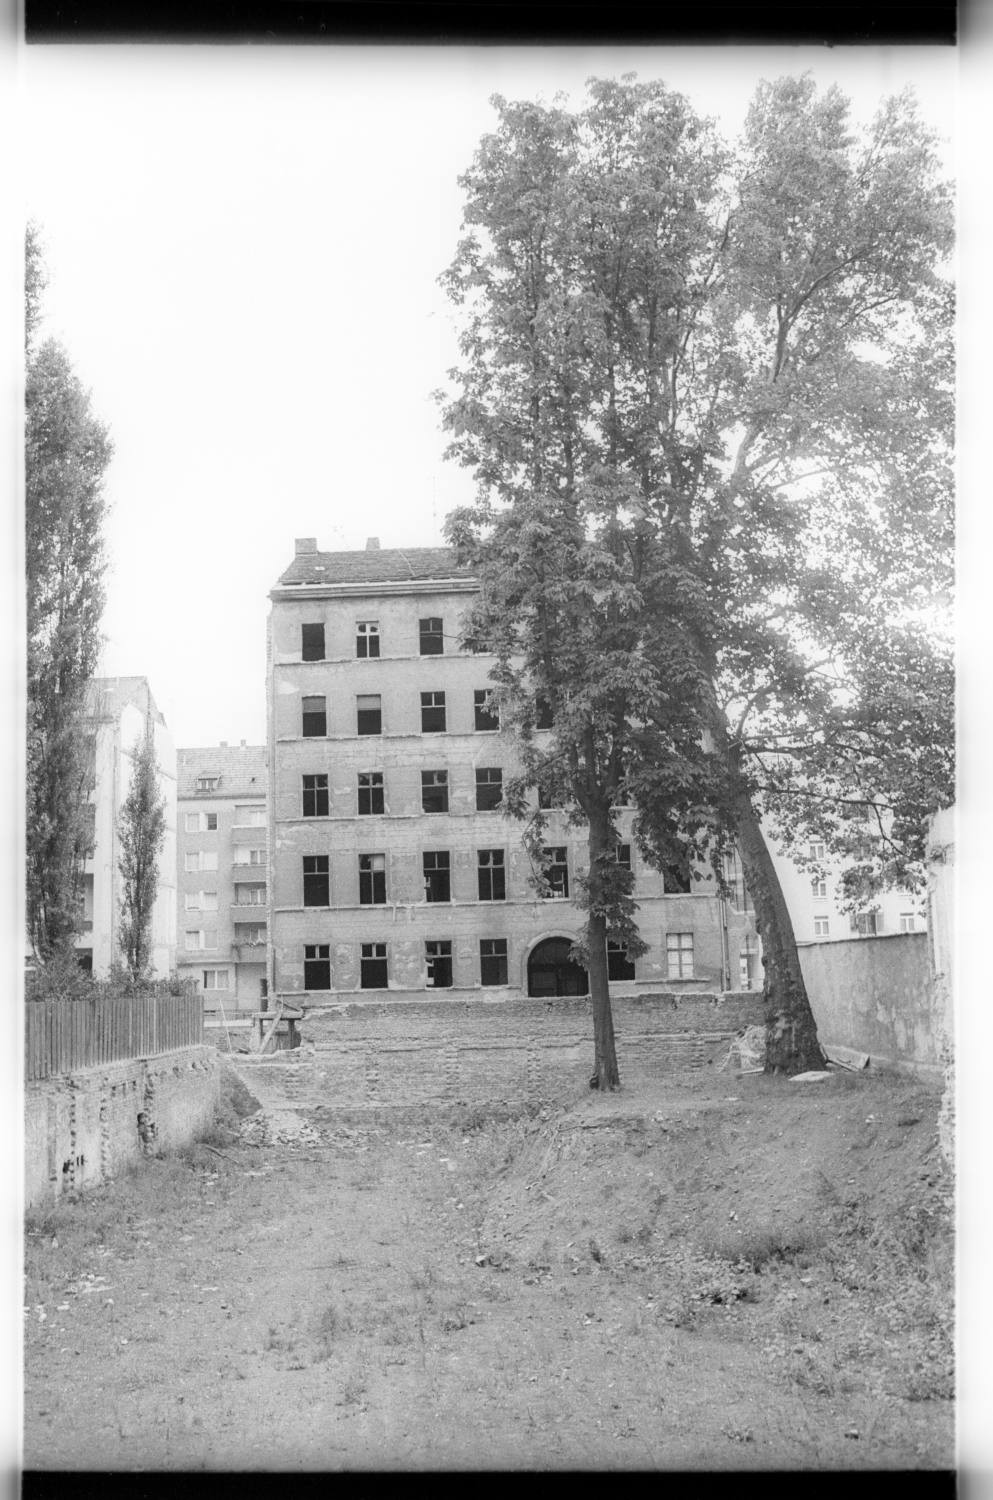 Kleinbildnegative: U.a. besetzte Häuser, Winterfeldstraße, 1981 (Museen Tempelhof-Schöneberg/Jürgen Henschel RR-F)